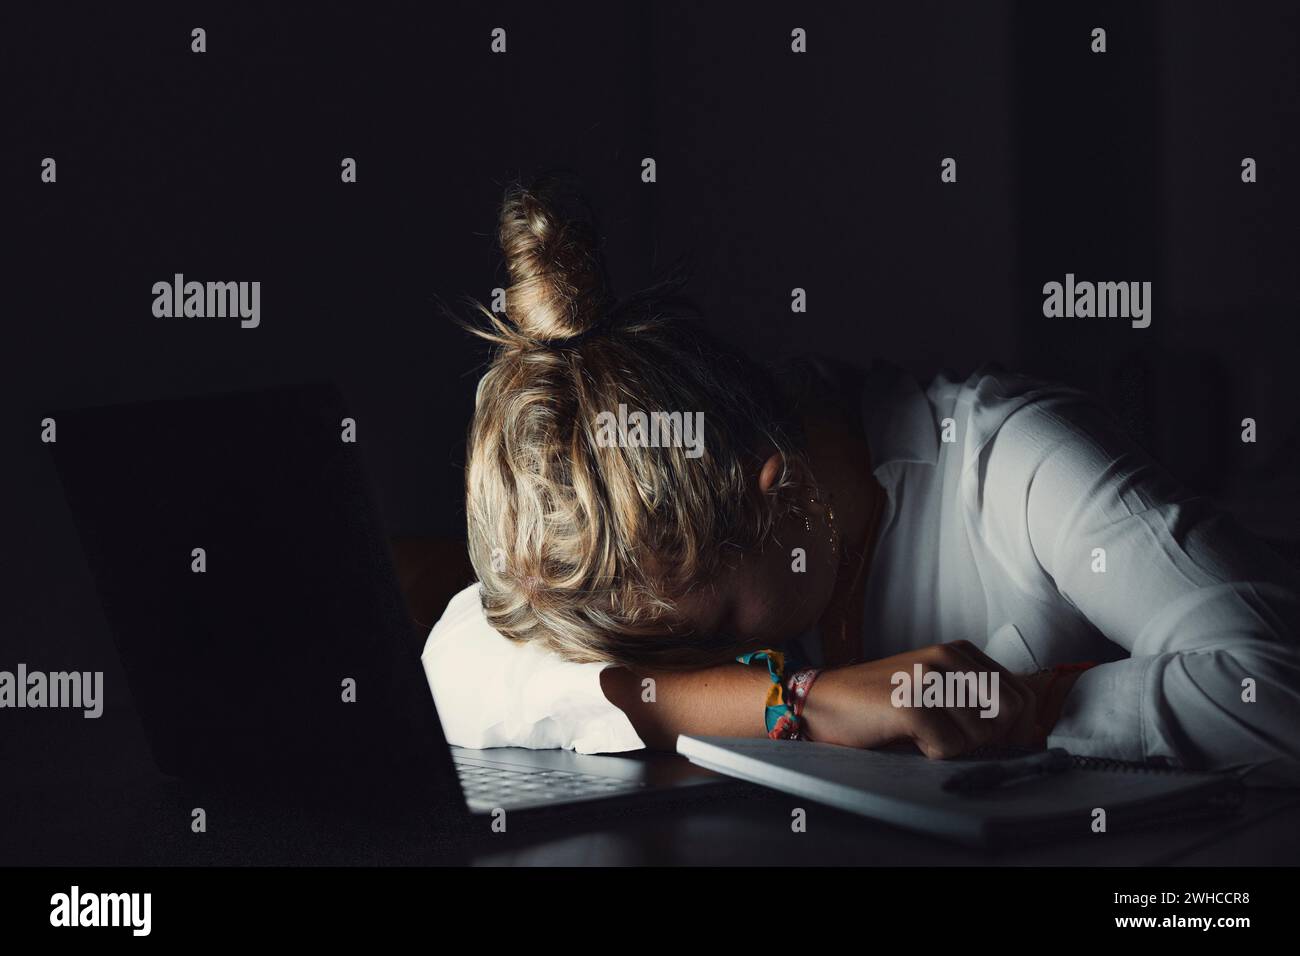 Müde Teenager Mädchen kaukasische Universitätsstudentin schlafen erschöpft nach schwieriger Lernprüfung, beraubte faule junge Frau, die schläft, sitzen am Schreibtisch und fühlen sich müde, wenn sie ein Nickerchen dösen, gelangweilt vom Studienkonzept Stockfoto